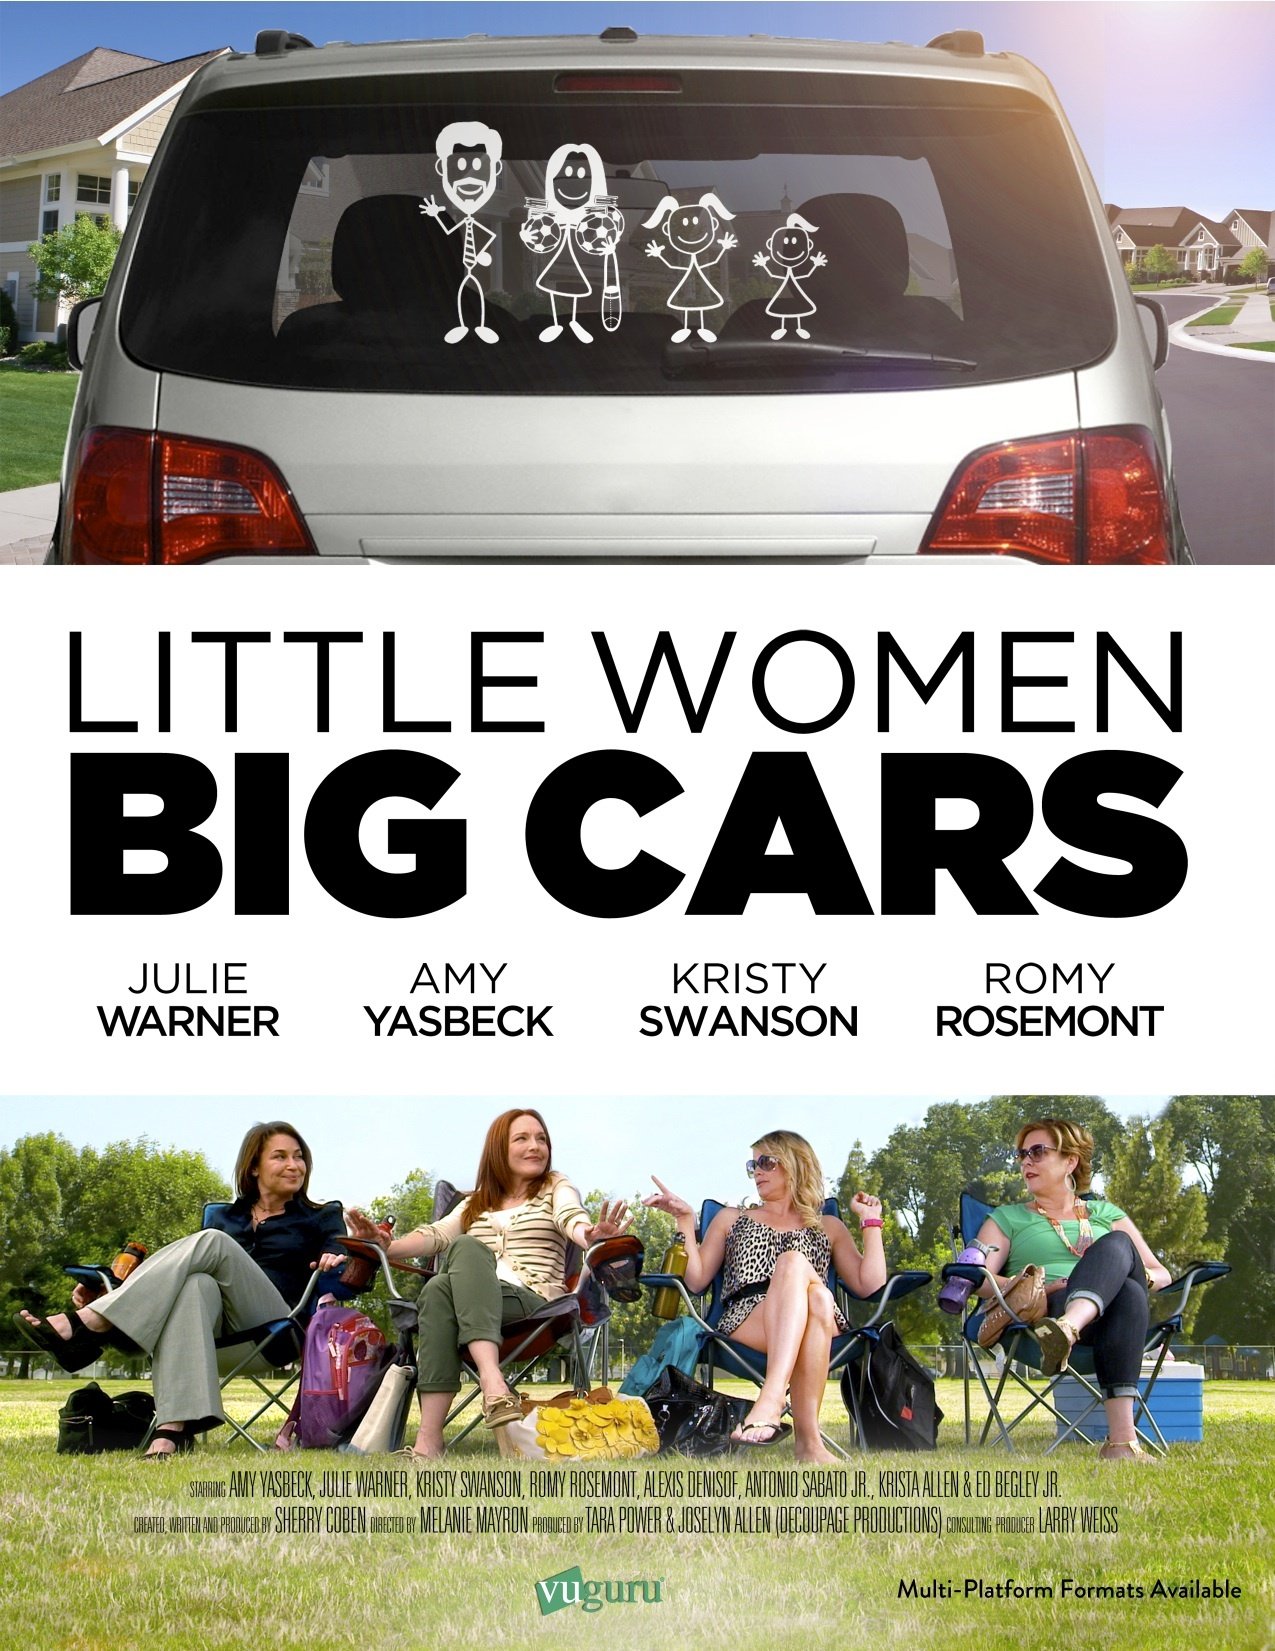 Little Women, Big Cars (2012) Screenshot 1